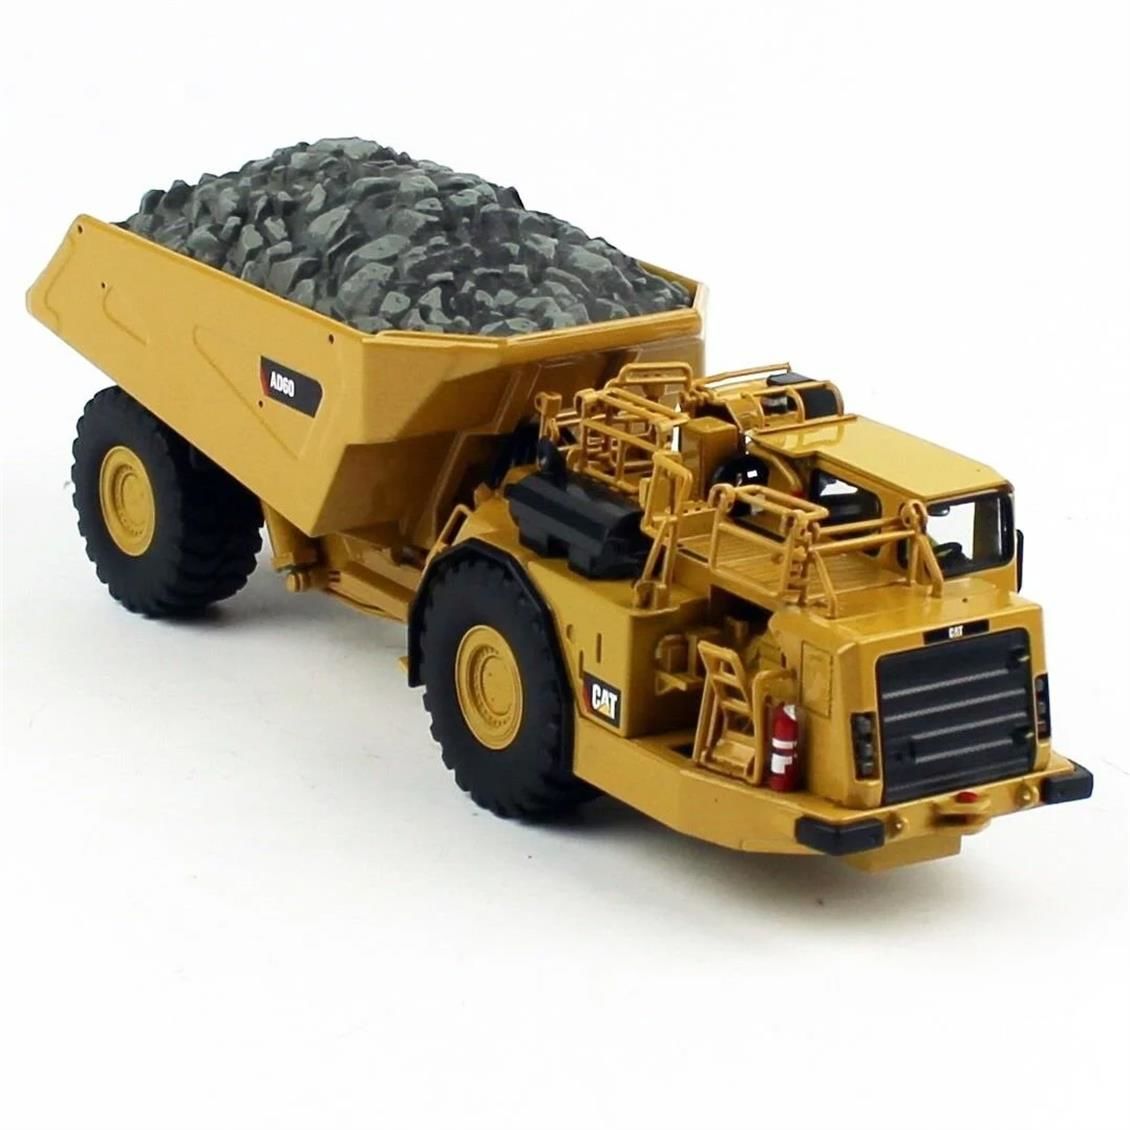 Diecast Masters 85516 1/50 Ölçek, Cat AD60 Maden Kamyonu, Sergilemeye Hazır Metal İş Makinası Modeli